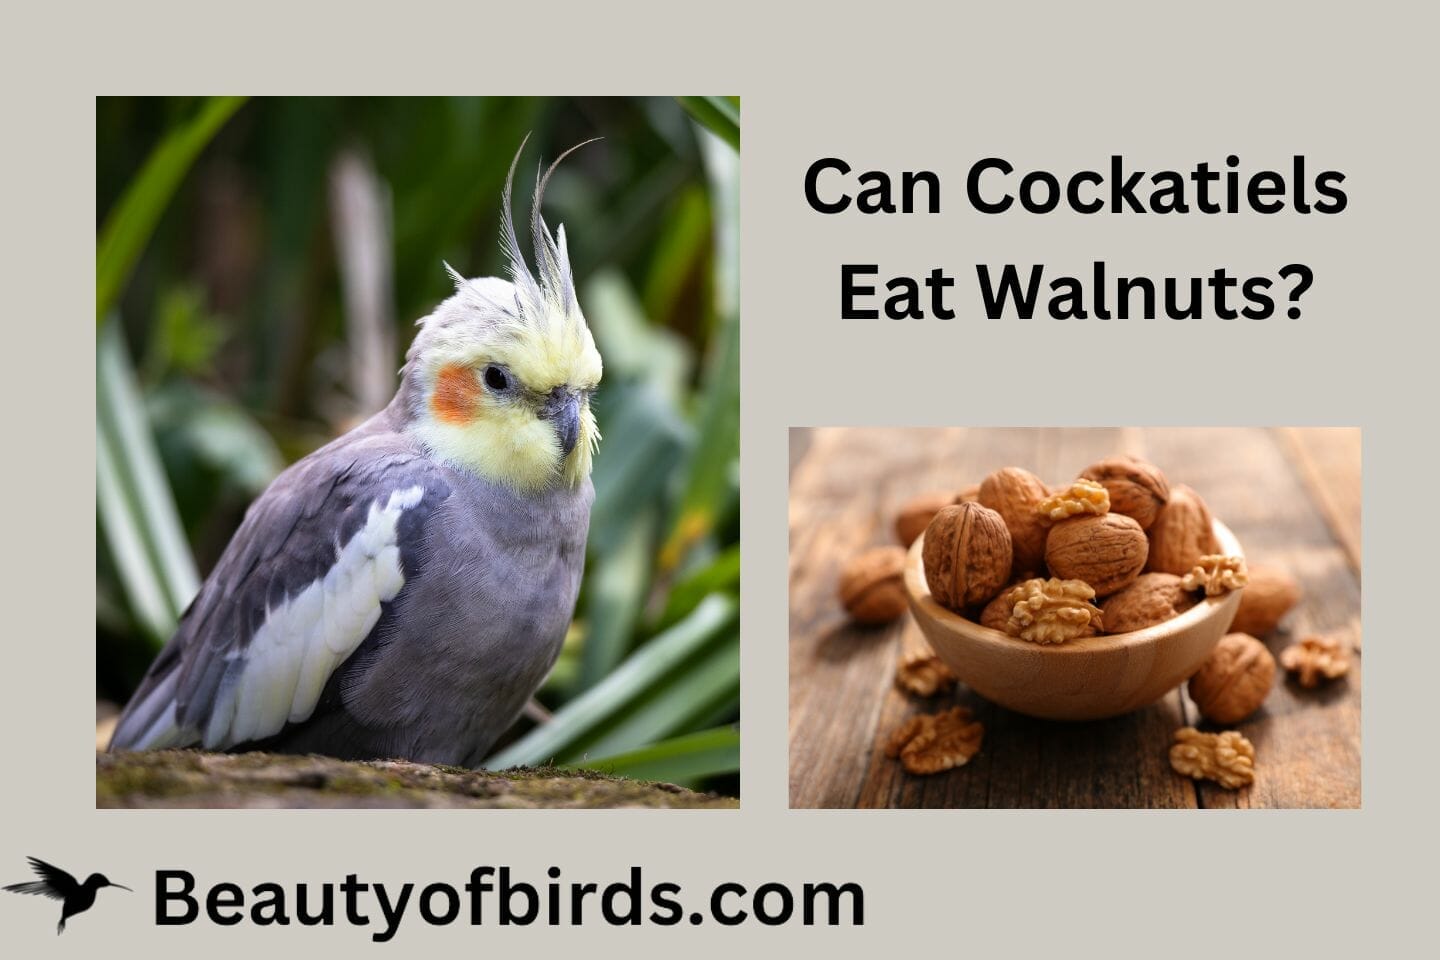 Can Cockatiels Eat Walnuts